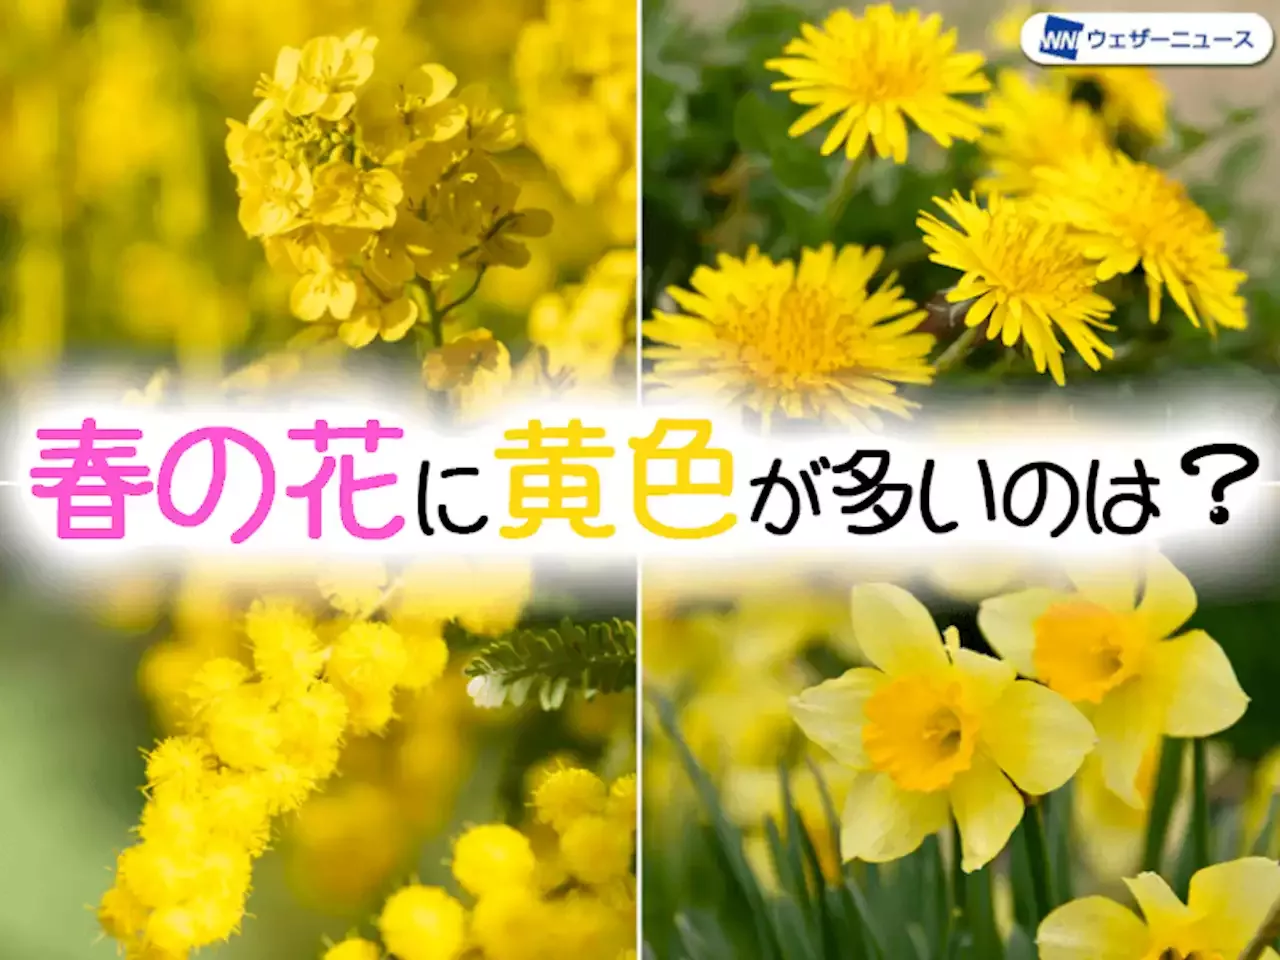 なぜ 春には黄色い花が多いのか